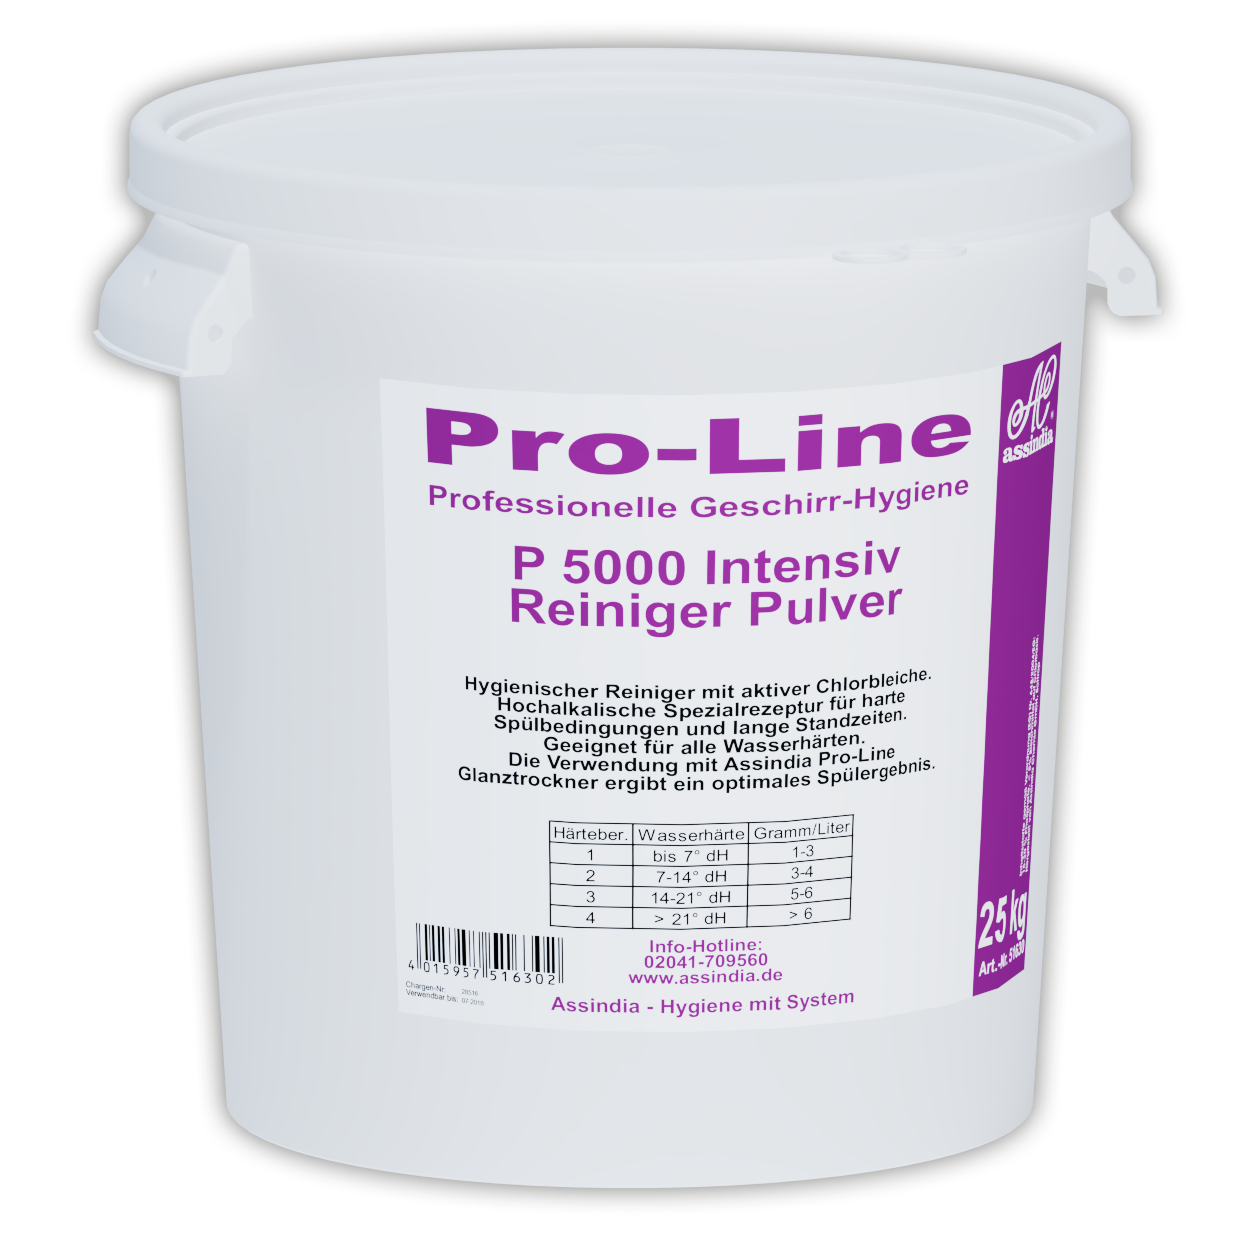 Pro-Line P 5000 Intensiv 25kg Eimer  (inkl. Gefahrgutzuschlag)